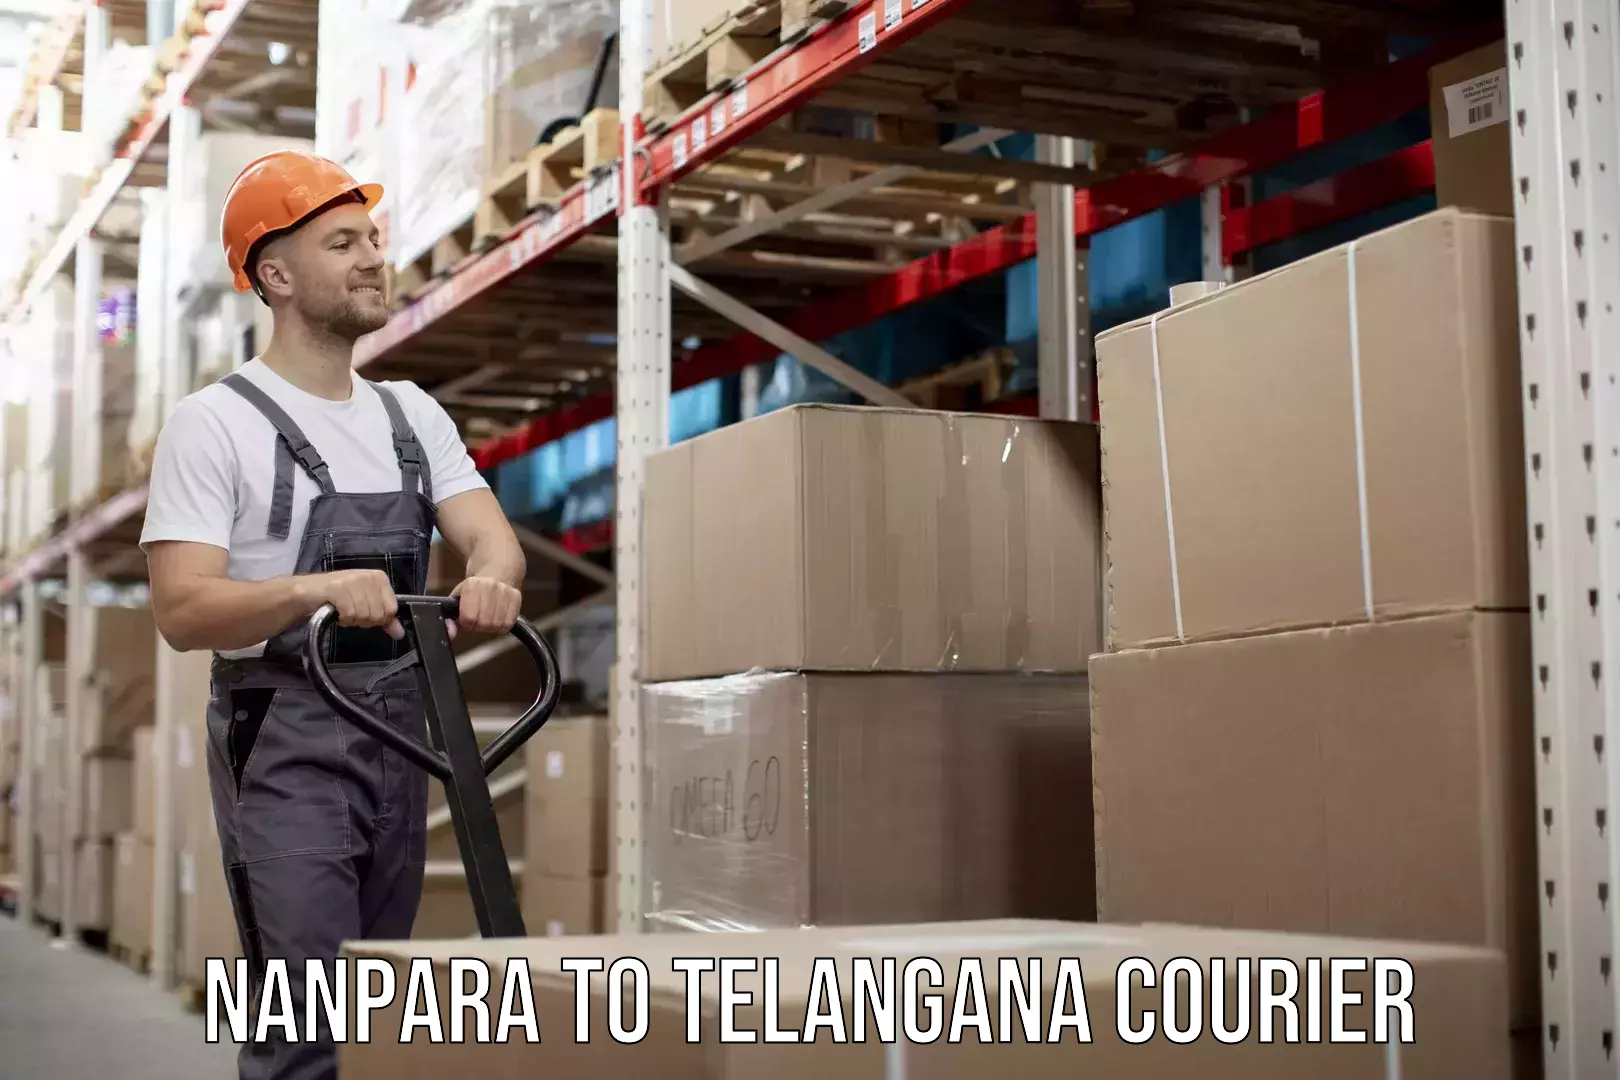 Moving and packing experts Nanpara to Telangana